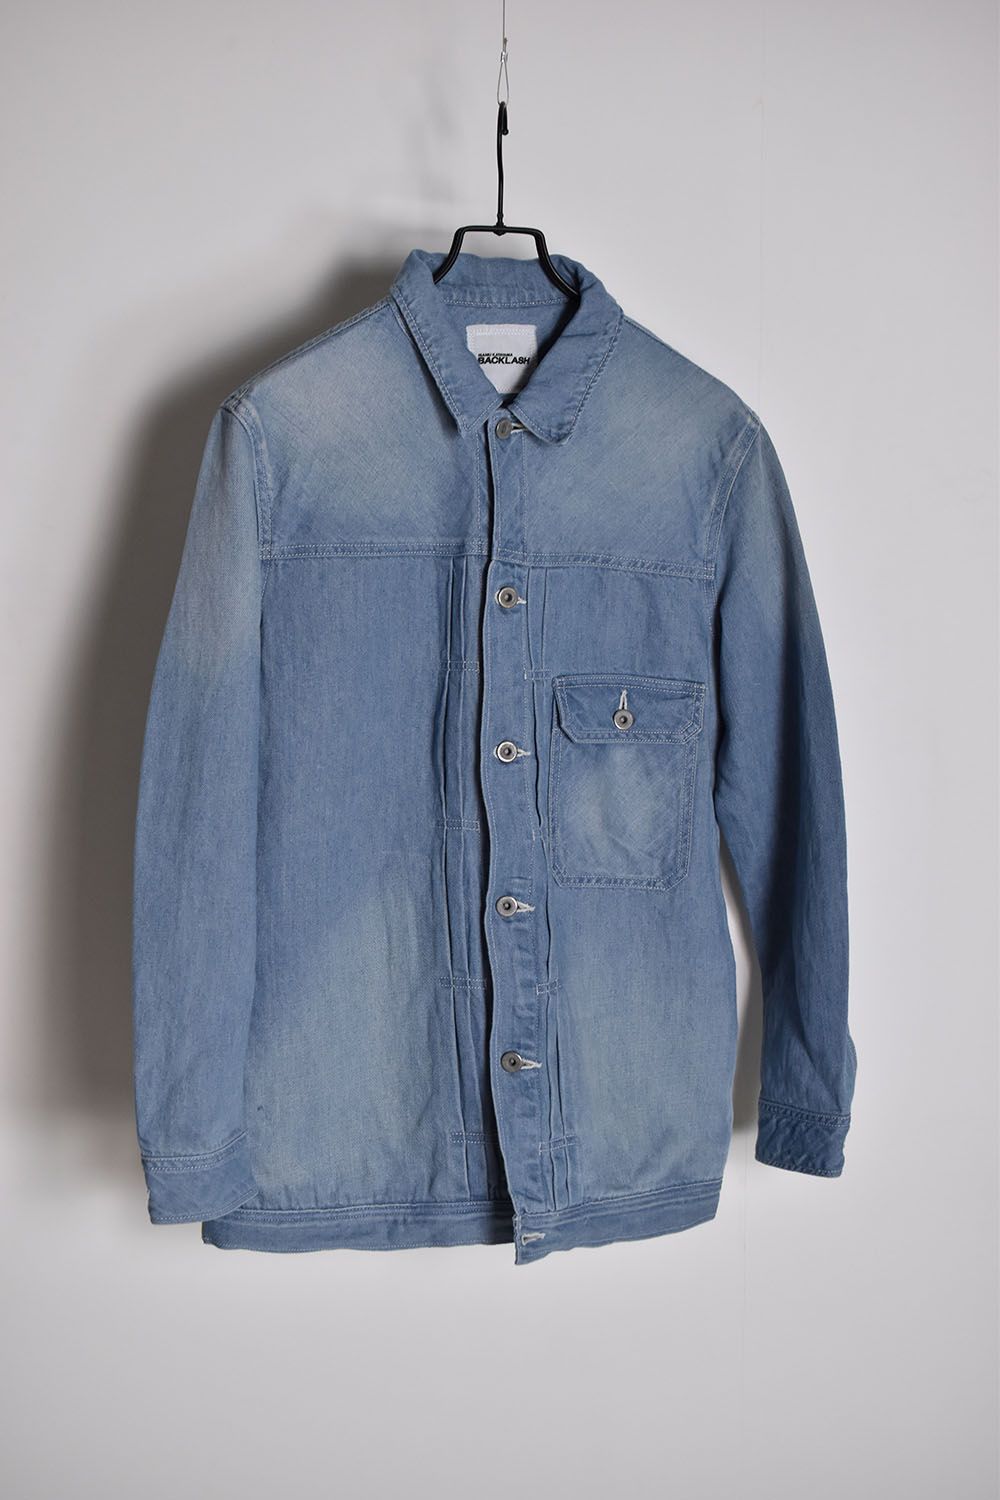 ISAMU KATAYAMA BACKLASH - Cotton Linen Over Fitting G-Jacket